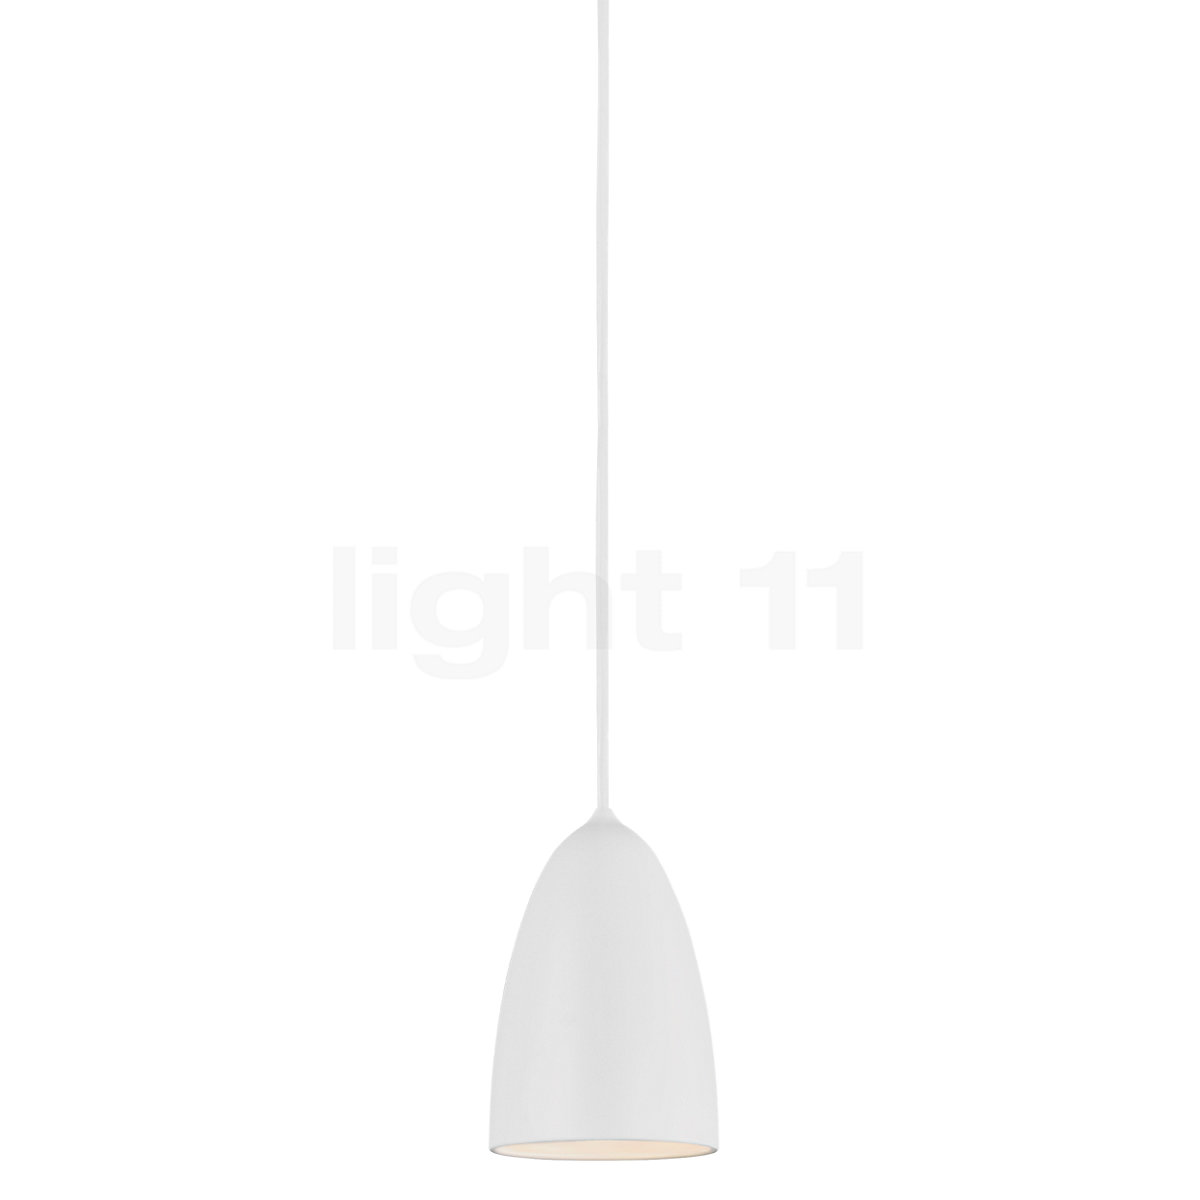 verwennen Oraal Jaarlijks Design for the People Nexus 2.0 small Hanglamp - light11.nl